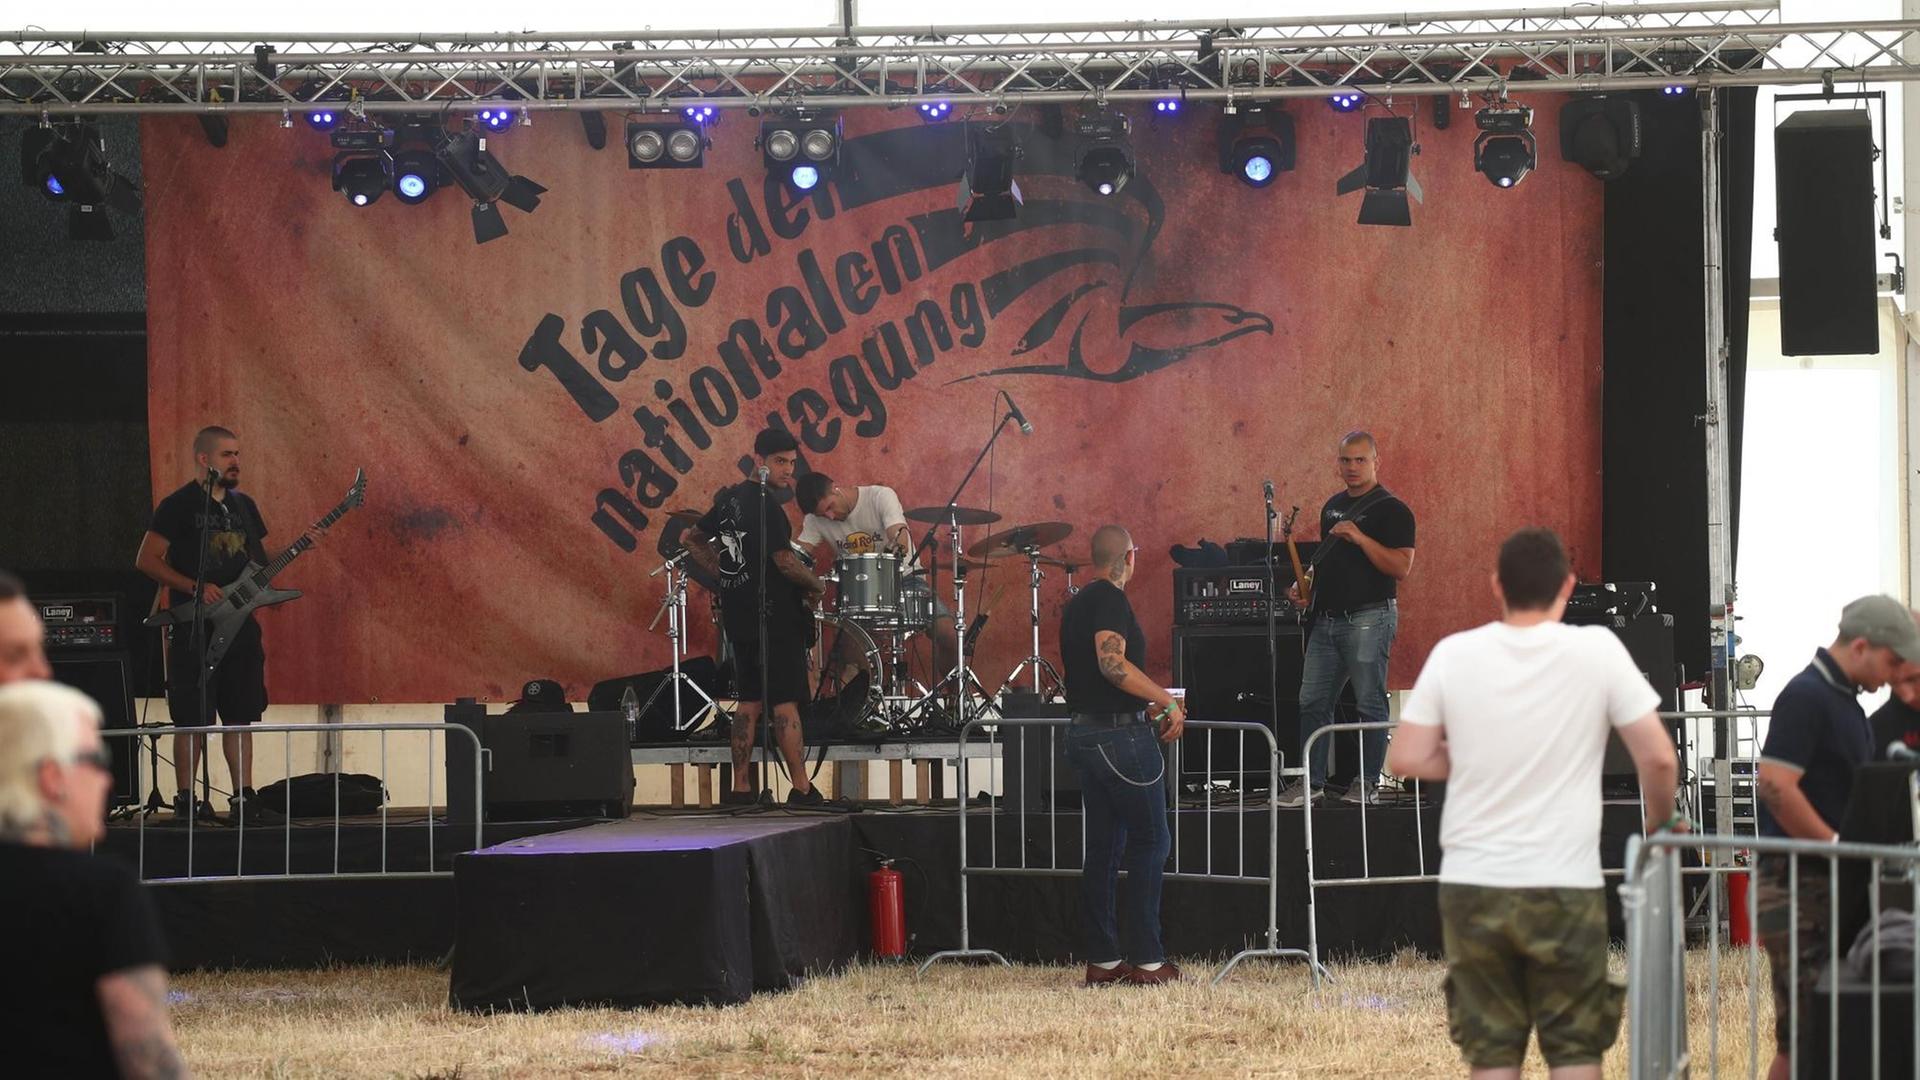 05.07.2019, Thüringen, Themar: Das Foto zeigt Besucher auf dem Veranstaltungsgelände beim Rechtsrock-Festival vor einer Bühne